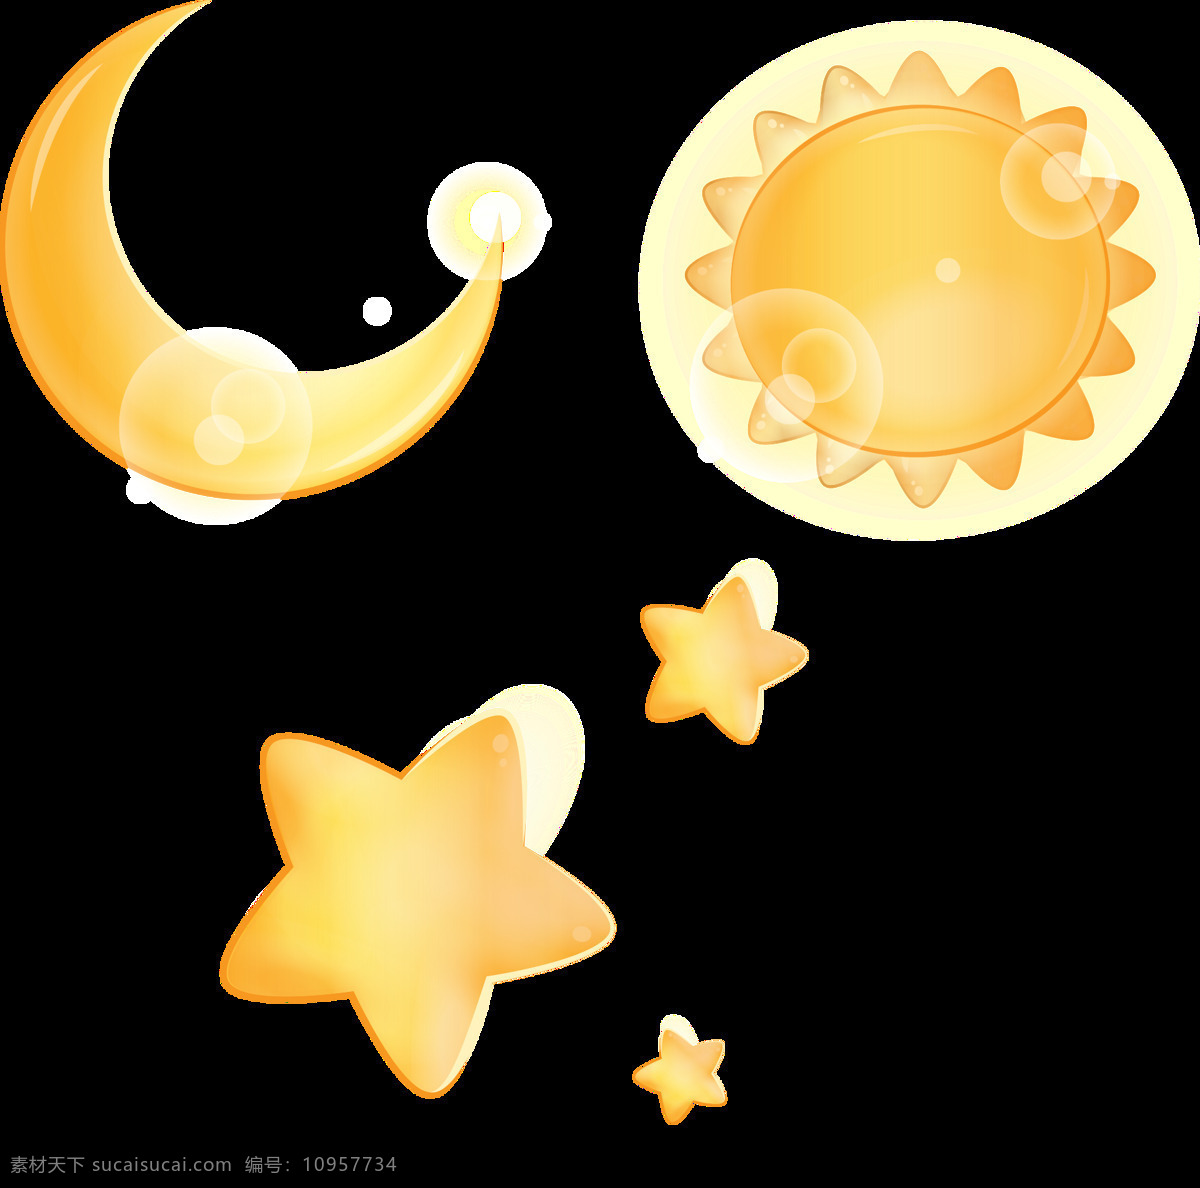 太阳星星月亮 太阳 星星 月亮 卡通 卡通设计